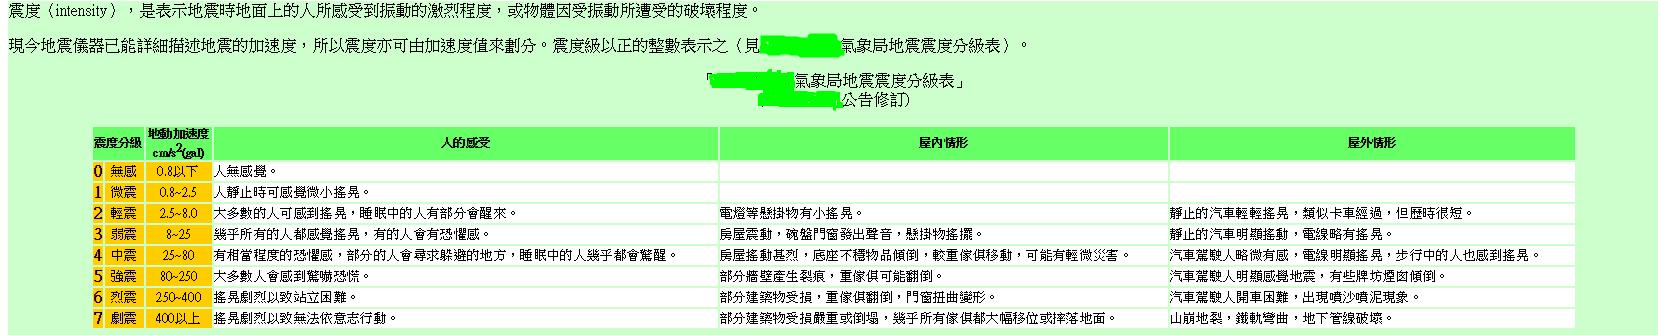 台灣省對震度的界定及分級